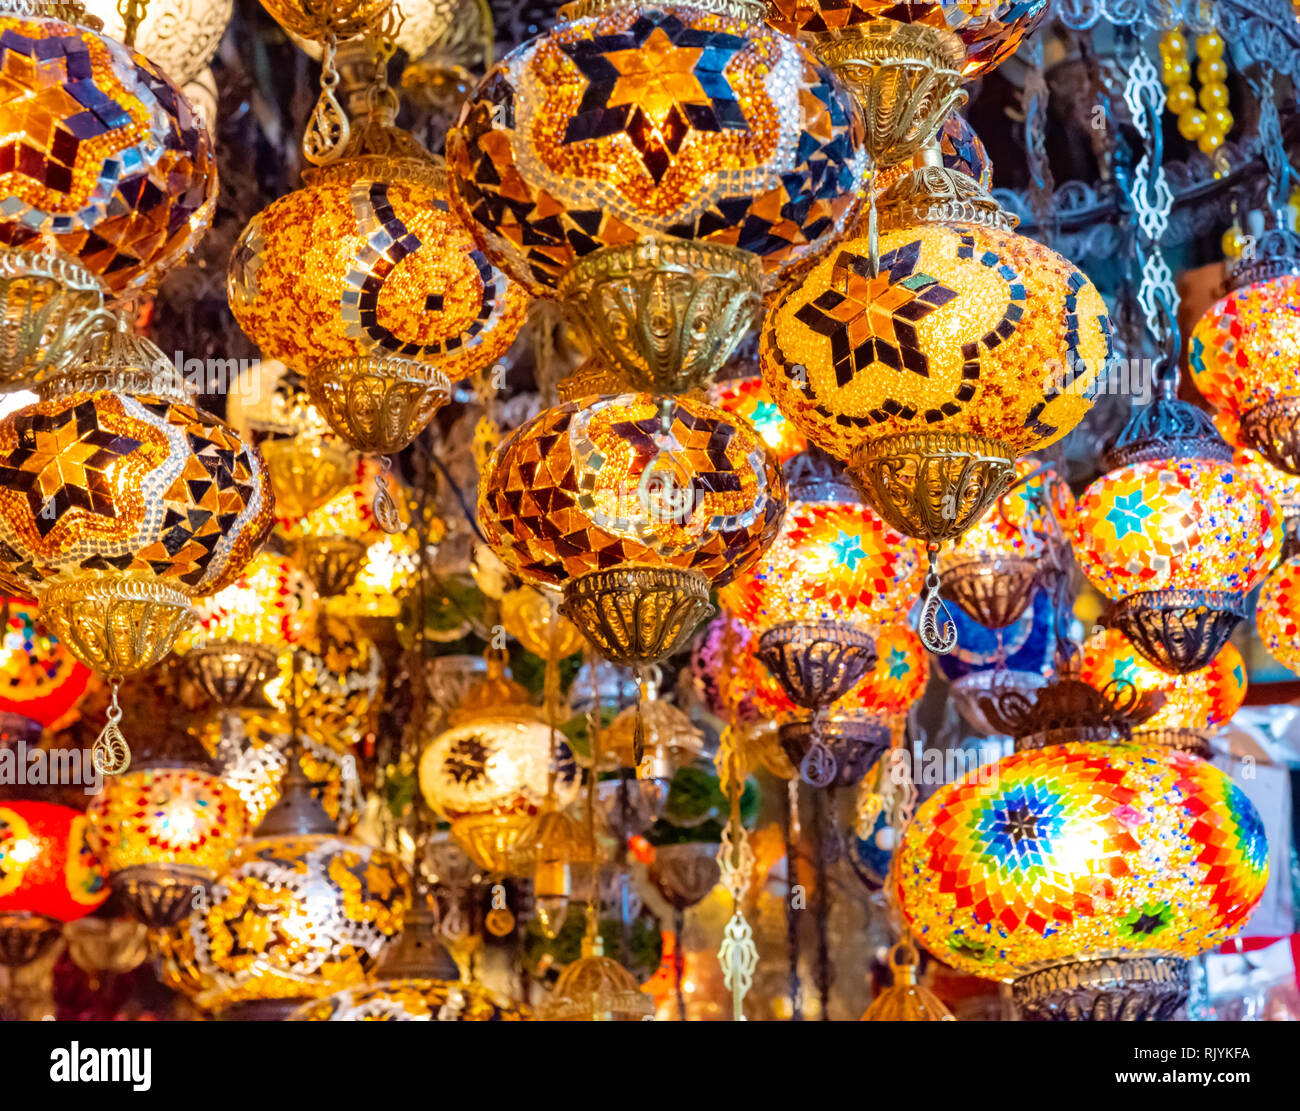 Mehrfarbige authentische Lampen am Großen Basar in Istanbul, Türkei hängen Stockfoto